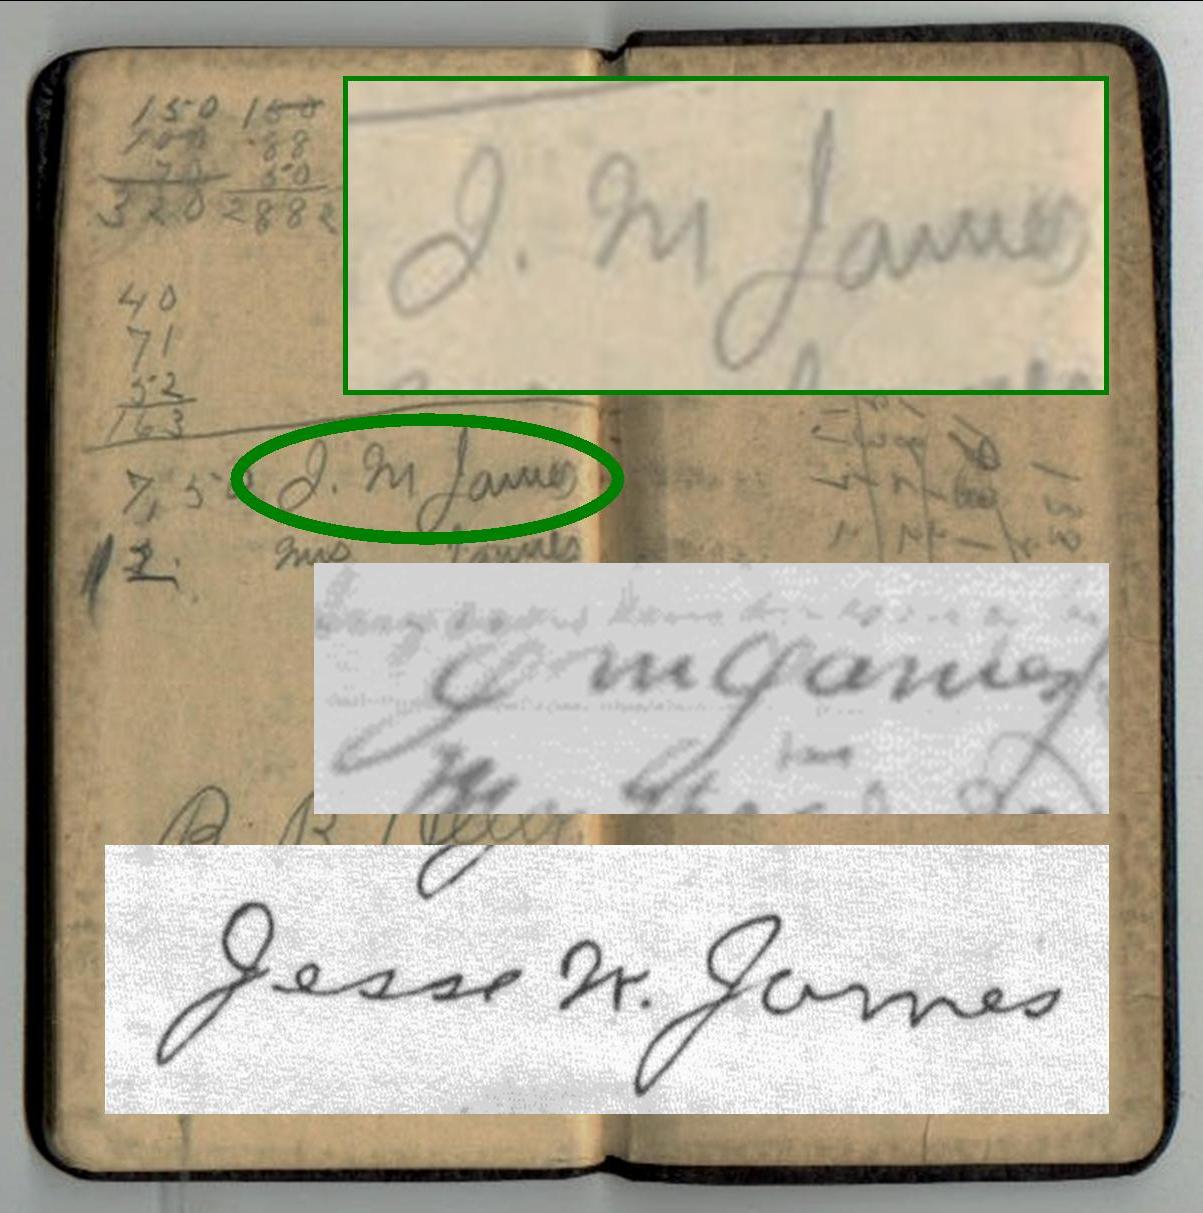 JM James Diary Signature Comparison